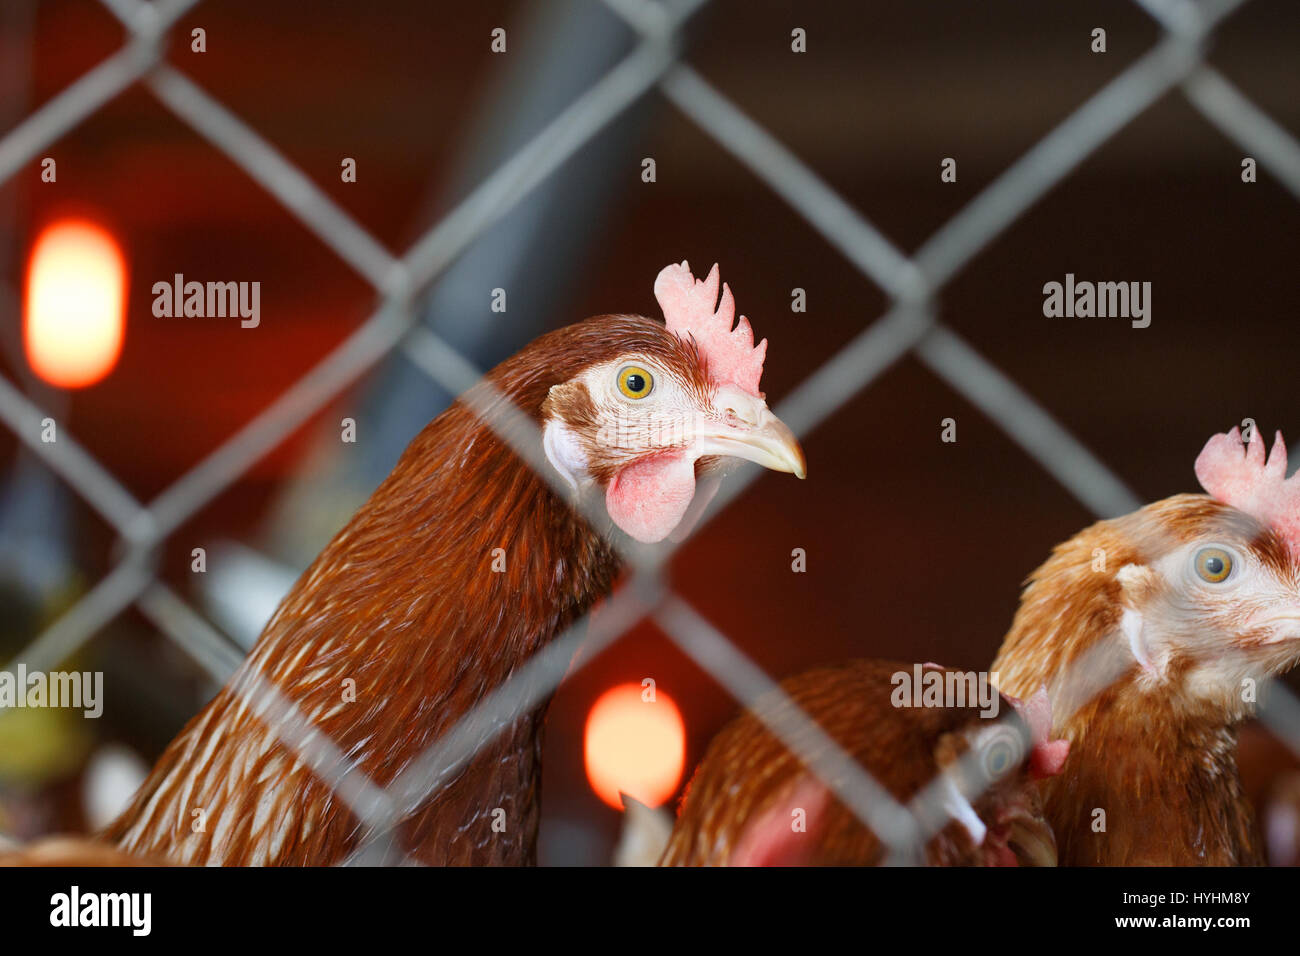 Les poules pondeuses, vivant dans des espaces confinés dans une installation industrielle, d'être bloqué derrière une clôture. La violence envers les animaux, qui vivent en captivité, la nourriture indust Banque D'Images